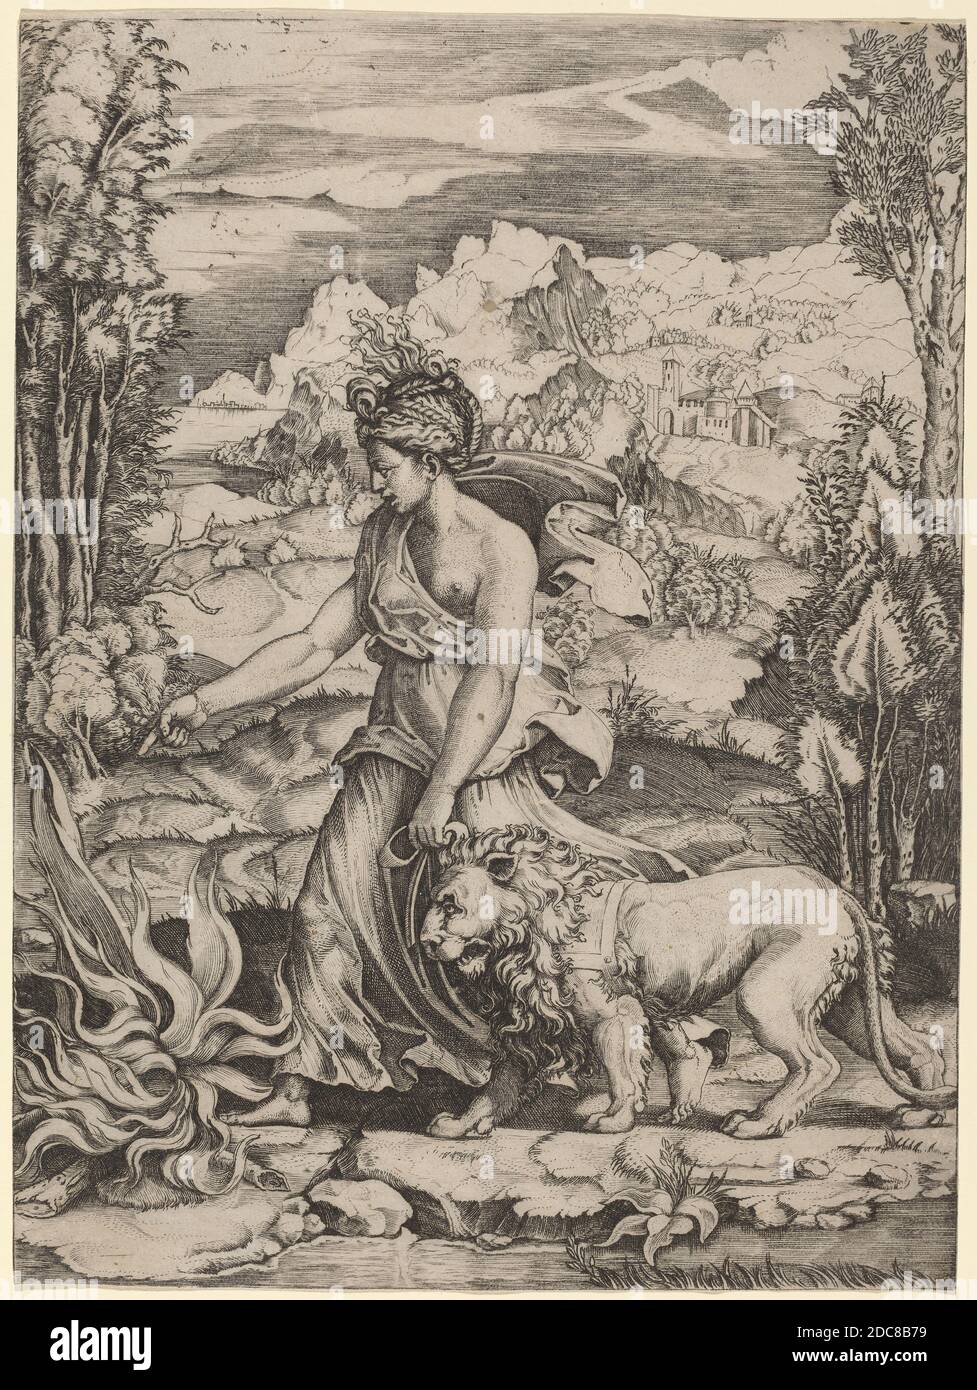 Marco dente, (artista), italiano, c. 1493 - 1527, Fortezza, incisione Foto Stock